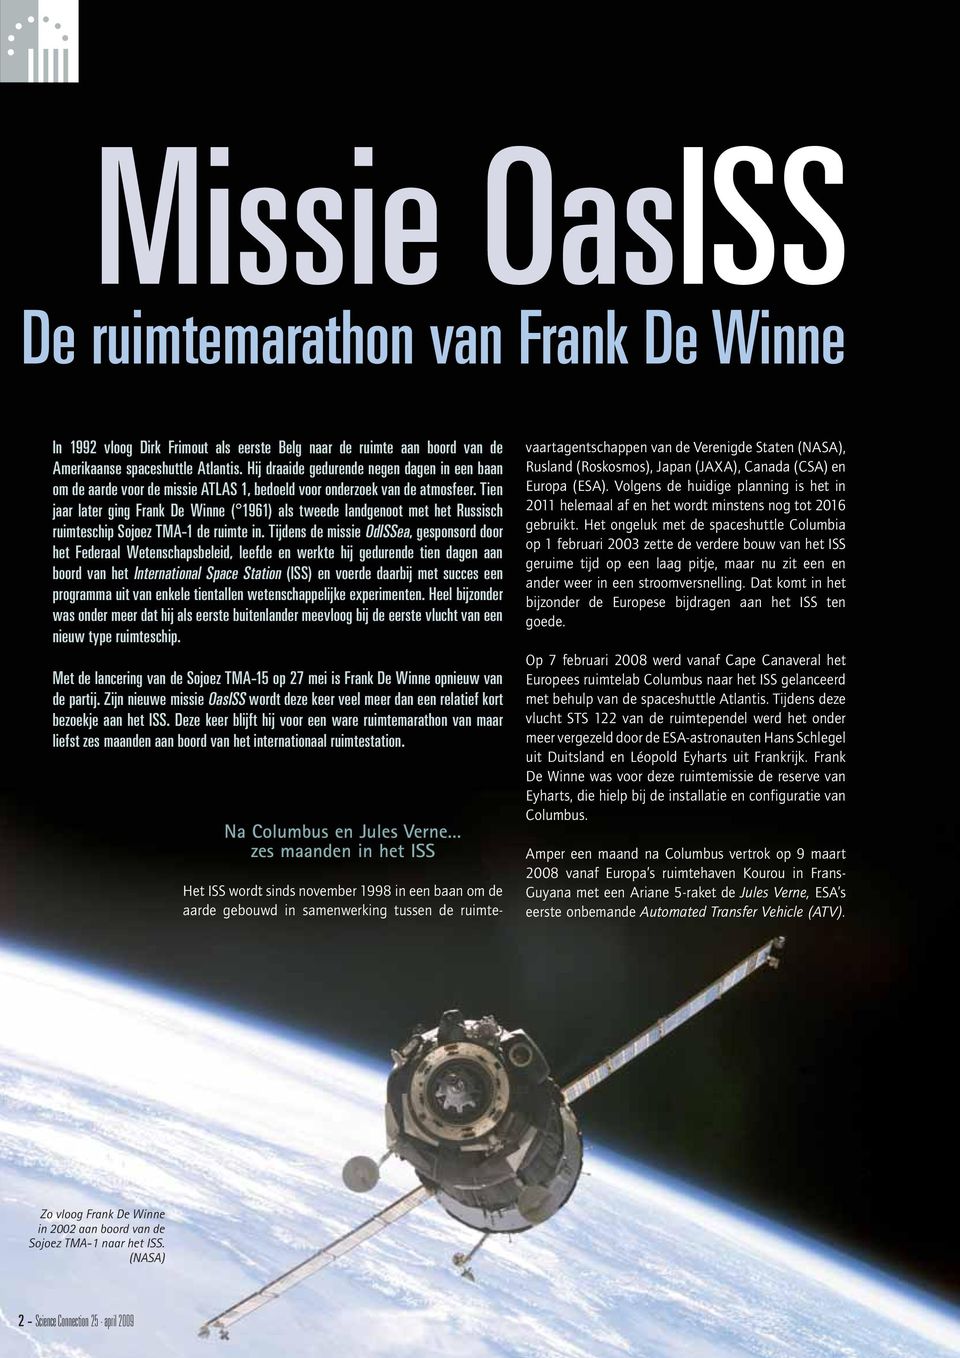 Tien jaar later ging Frank De Winne ( 1961) als tweede landgenoot met het Russisch ruimteschip Sojoez TMA-1 de ruimte in.